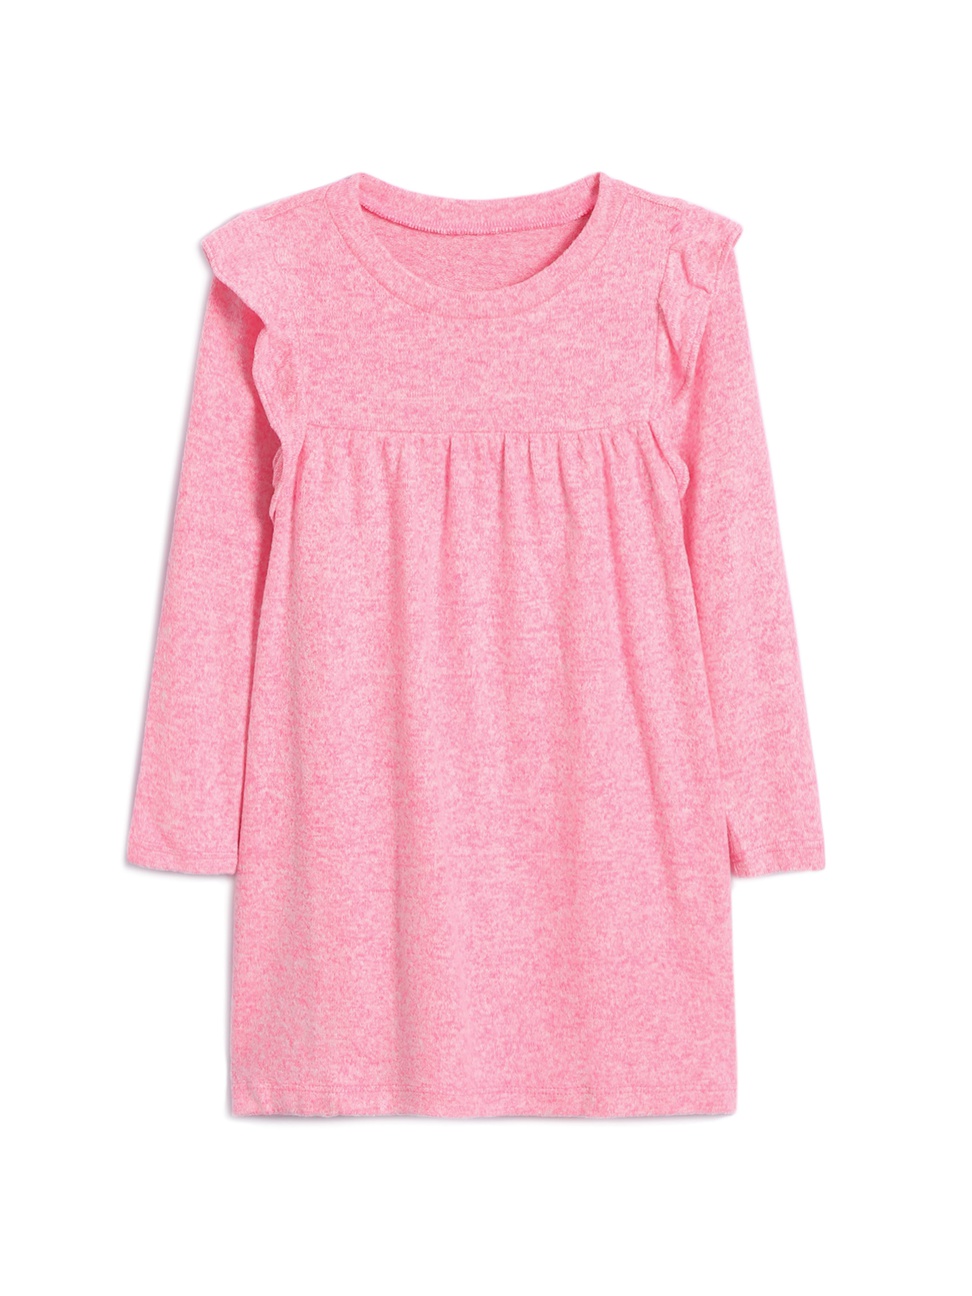 女幼童裝|柔軟荷葉邊長袖圓領洋裝-淺色粉